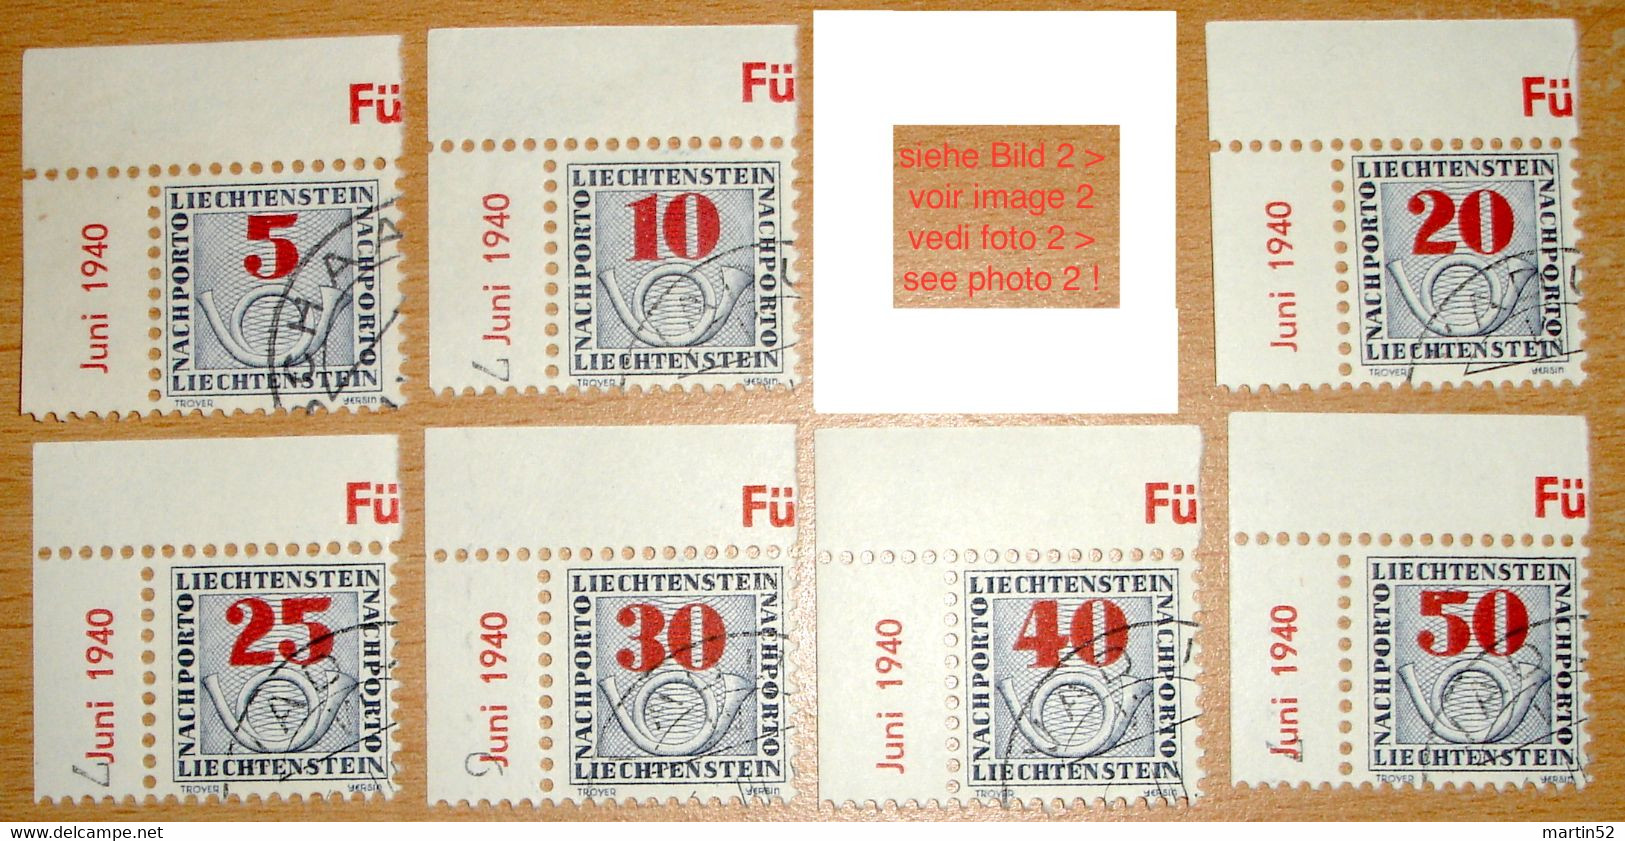 Liechtenstein 1940: LETZTE NACHPORTO-Marken Nr.21-28 (23 Ohne Rand) In Schweizer Währung Gestempelt Used (Zu CHF 40.00) - Postage Due